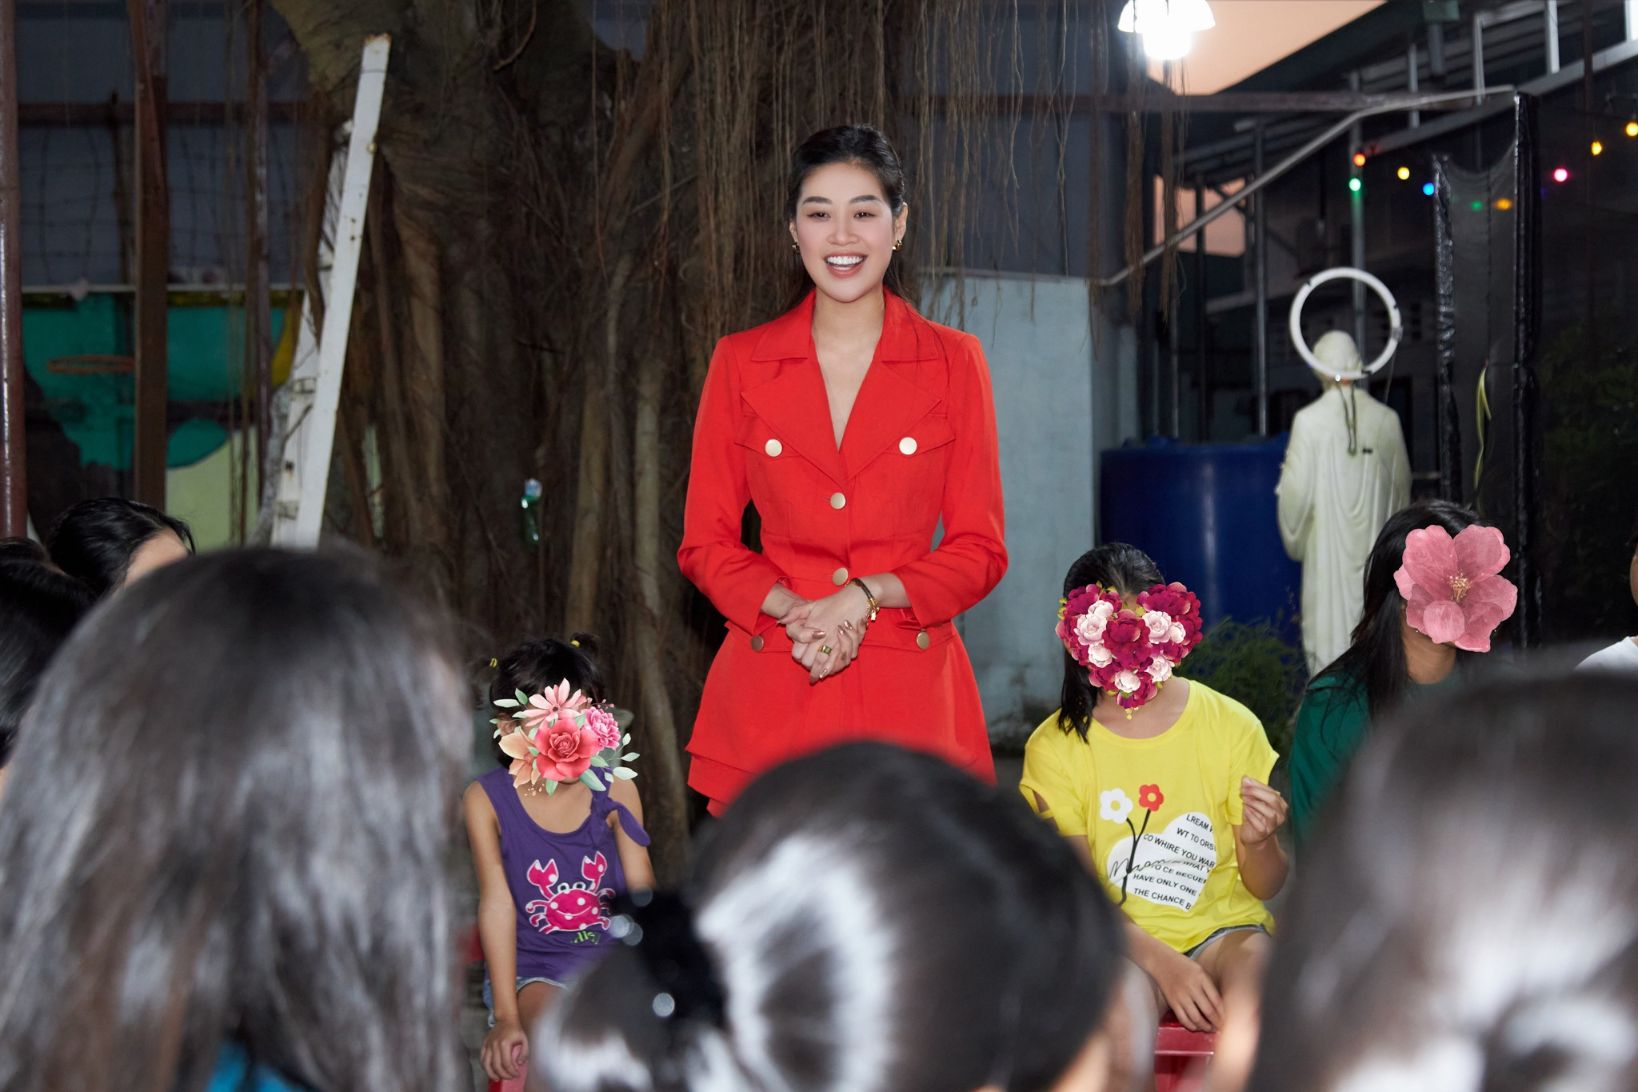 Hoa hau Khanh Van den tham ngoi nha OBV8 Hoa hậu Khánh Vân lì xì, gửi lời chúc năm mới các em ngôi nhà OBV